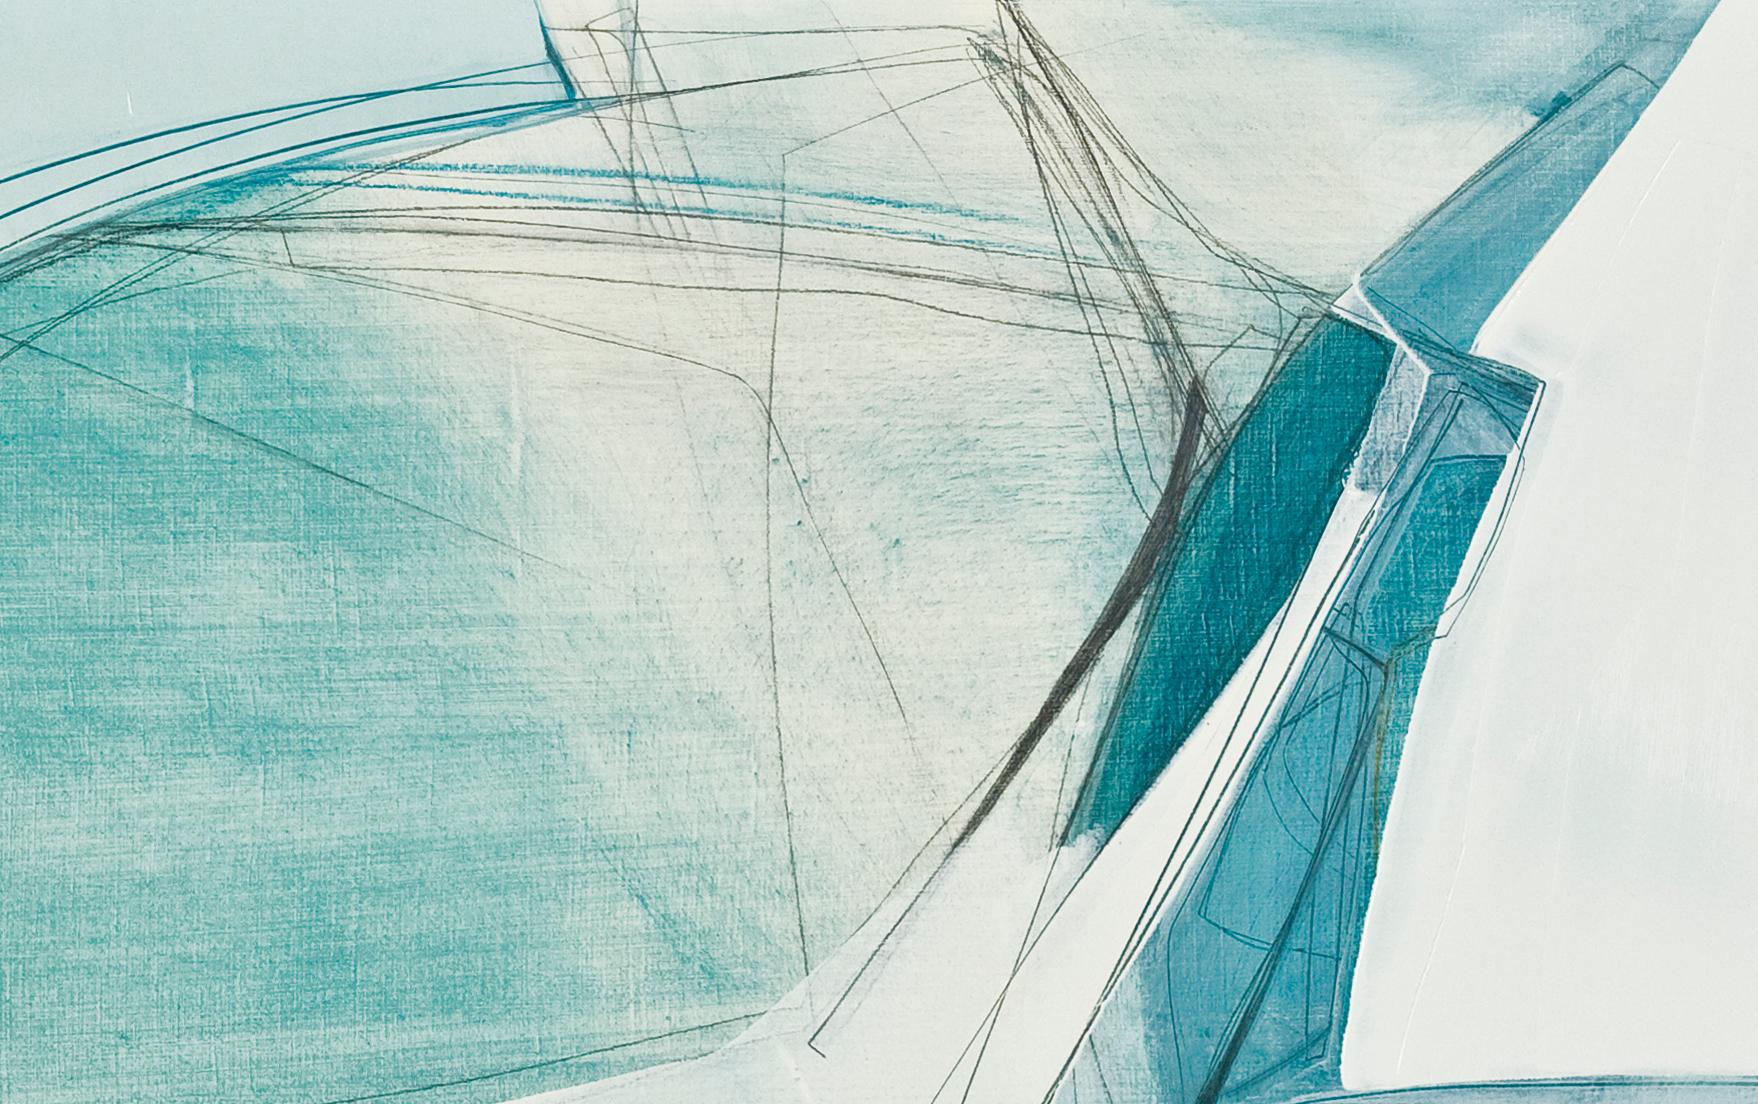 Convergence in Blue von Rose Umerlik ist ein abstraktes Gemälde, Öl und Graphit auf Holzplatte, 24 x 38.

Rose Umerlik extrahiert die ungreifbaren emotionalen Momente, die in unserer kollektiven menschlichen Psyche leben, und interpretiert sie